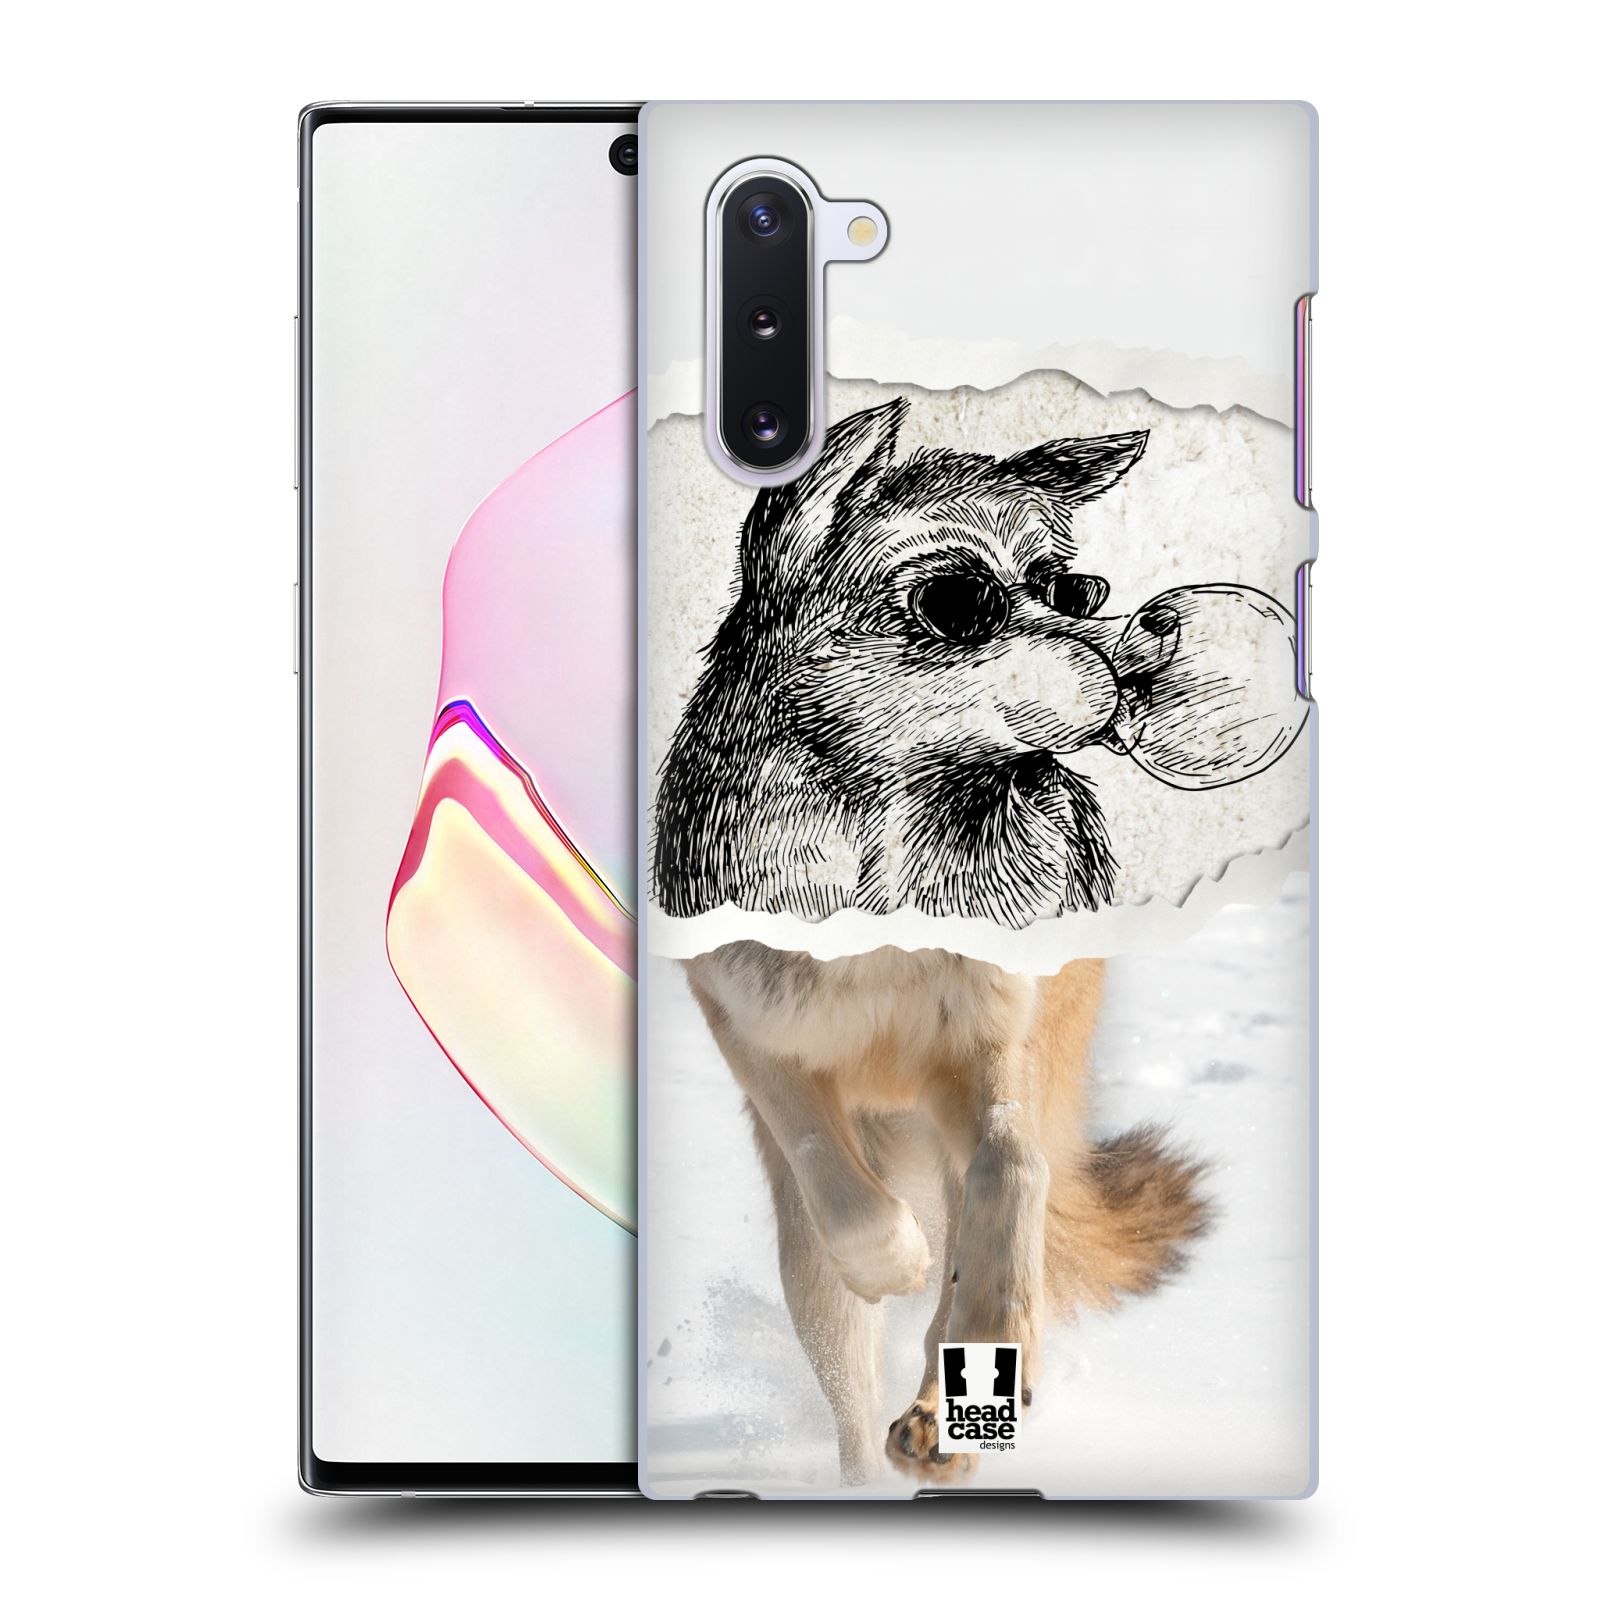 Pouzdro na mobil Samsung Galaxy Note 10 - HEAD CASE - vzor zvířata koláž vlk pohodář